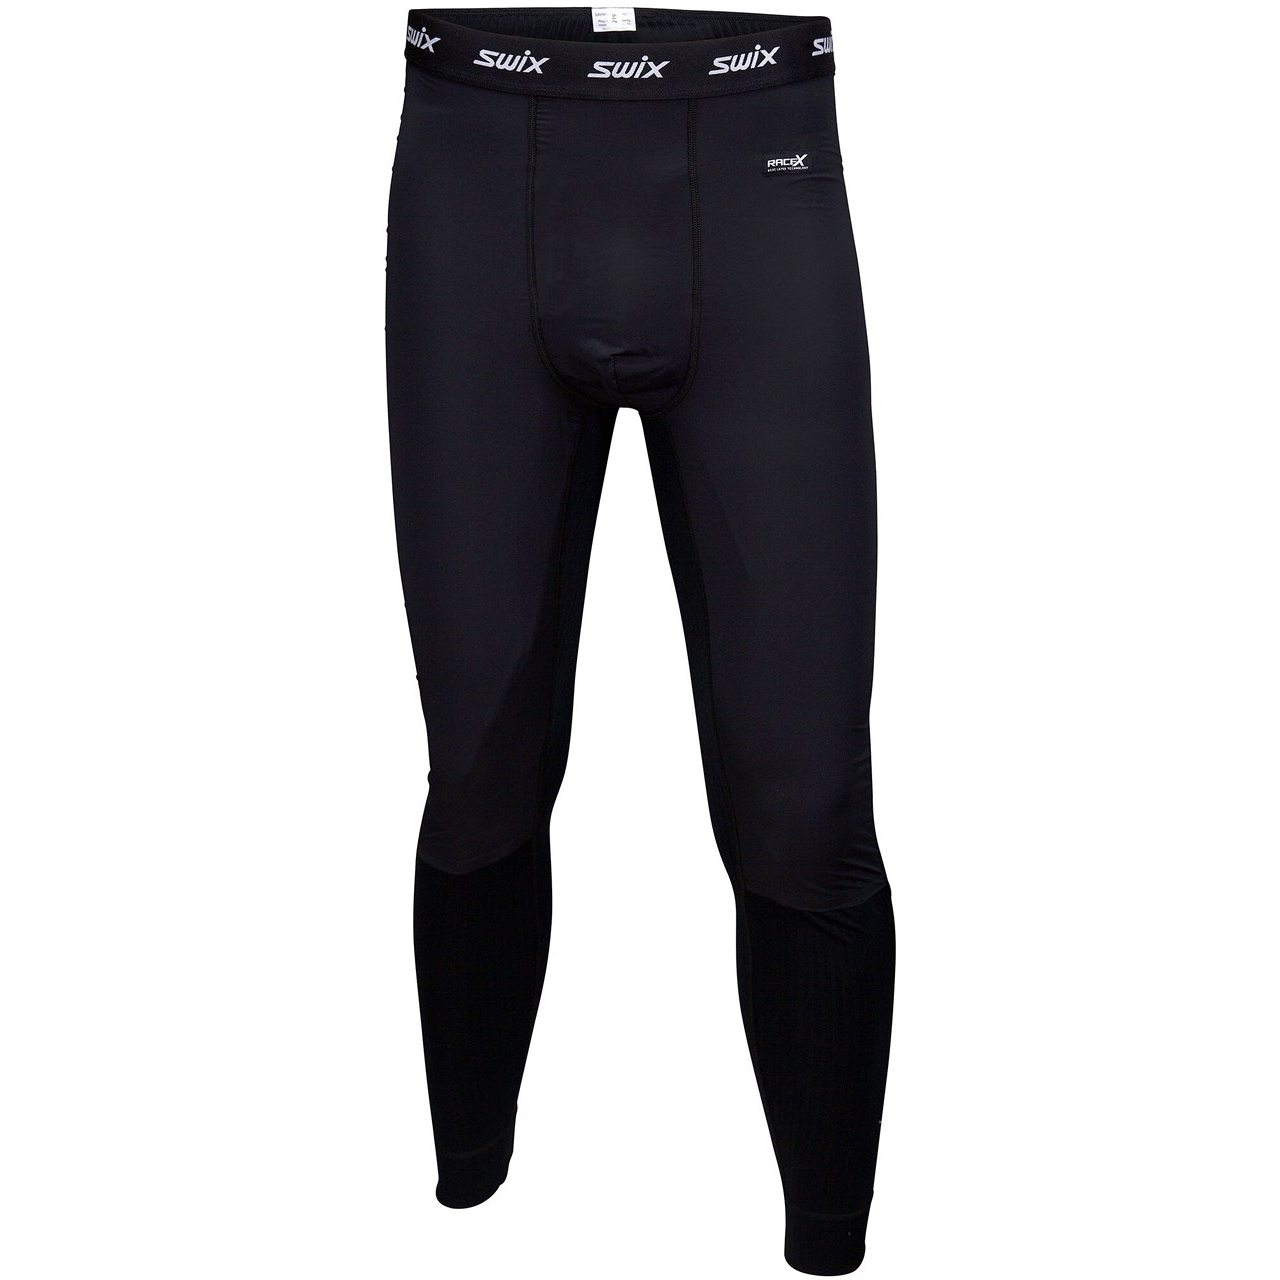 Picture of Swix RaceX Bodywear Wind Pants - Black